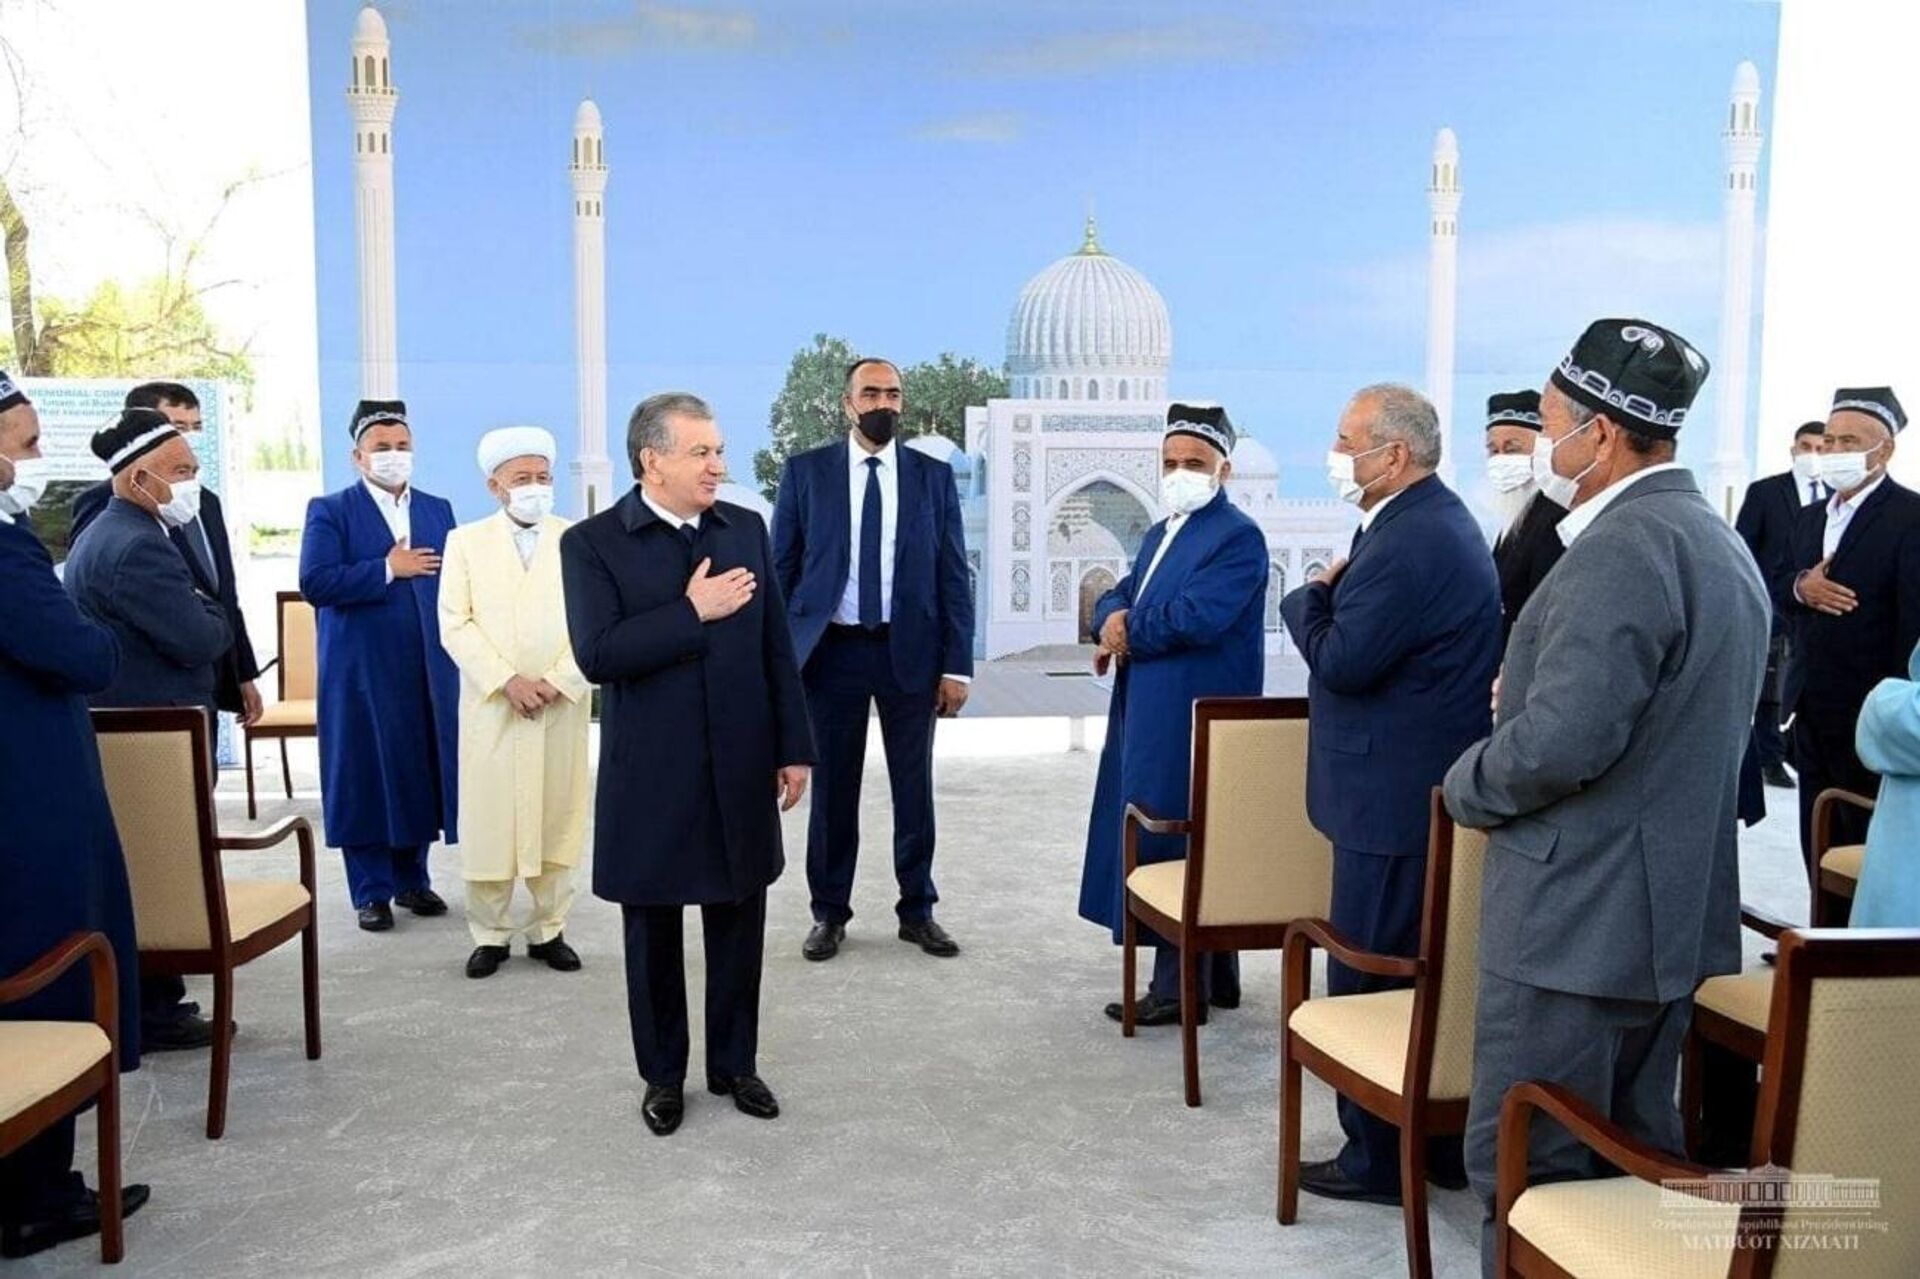 Президент Узбекистана Шавкат Мирзиёев встретился в Самарканде с представителями старшего поколения и интеллигенции - Sputnik Узбекистан, 1920, 15.04.2021